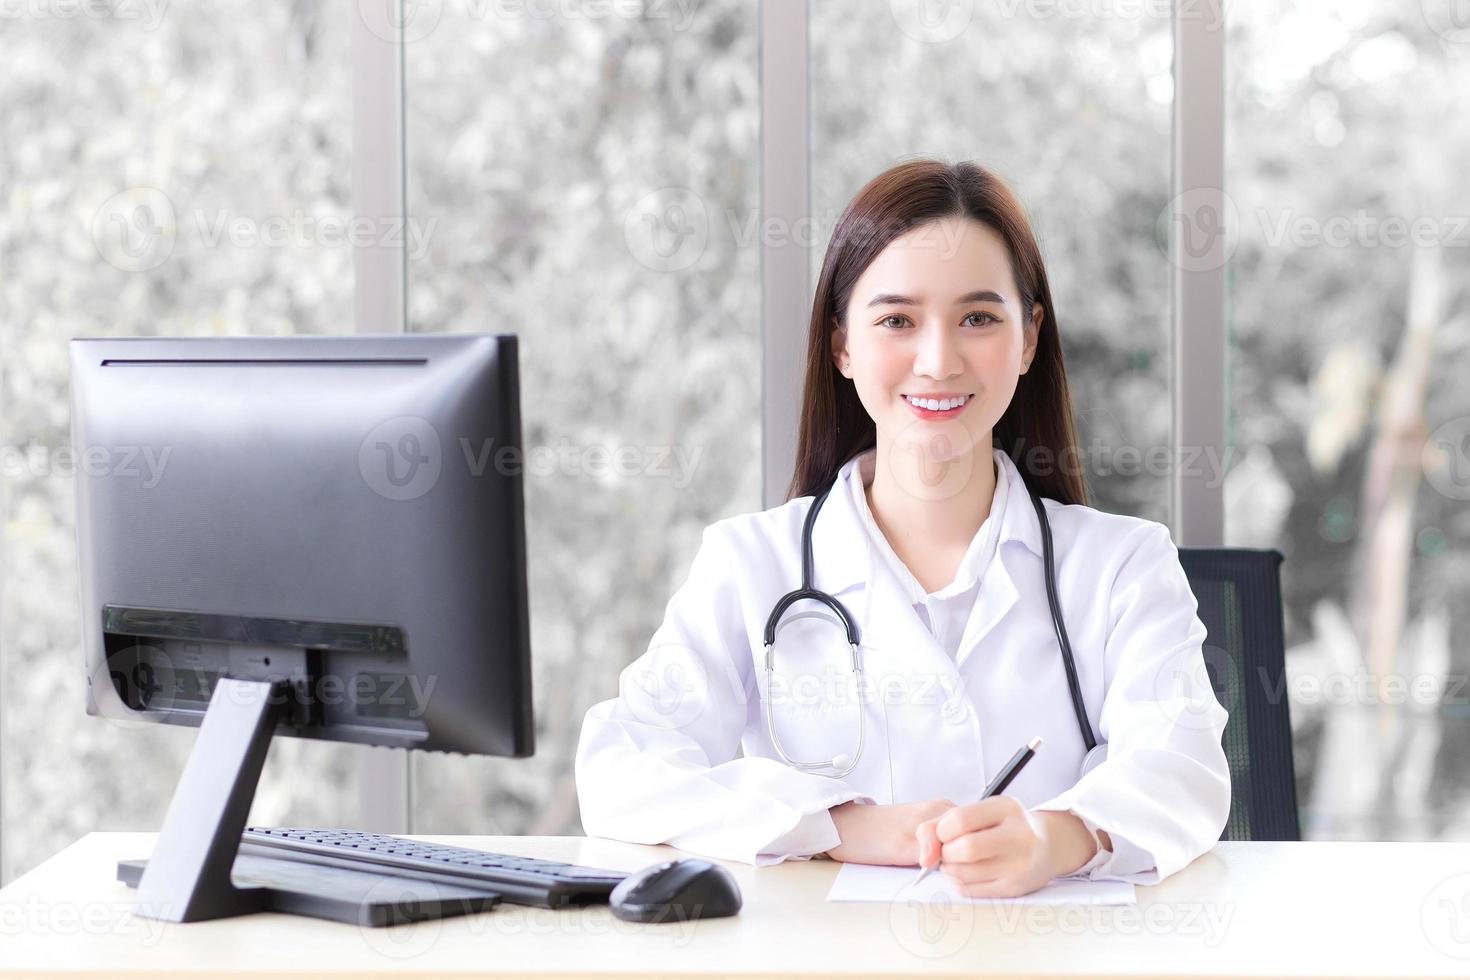 médico de mulher bonita asiática que usa jaleco está trabalhando na sala de escritório no hospital enquanto o computador é colocado na mesa. foto